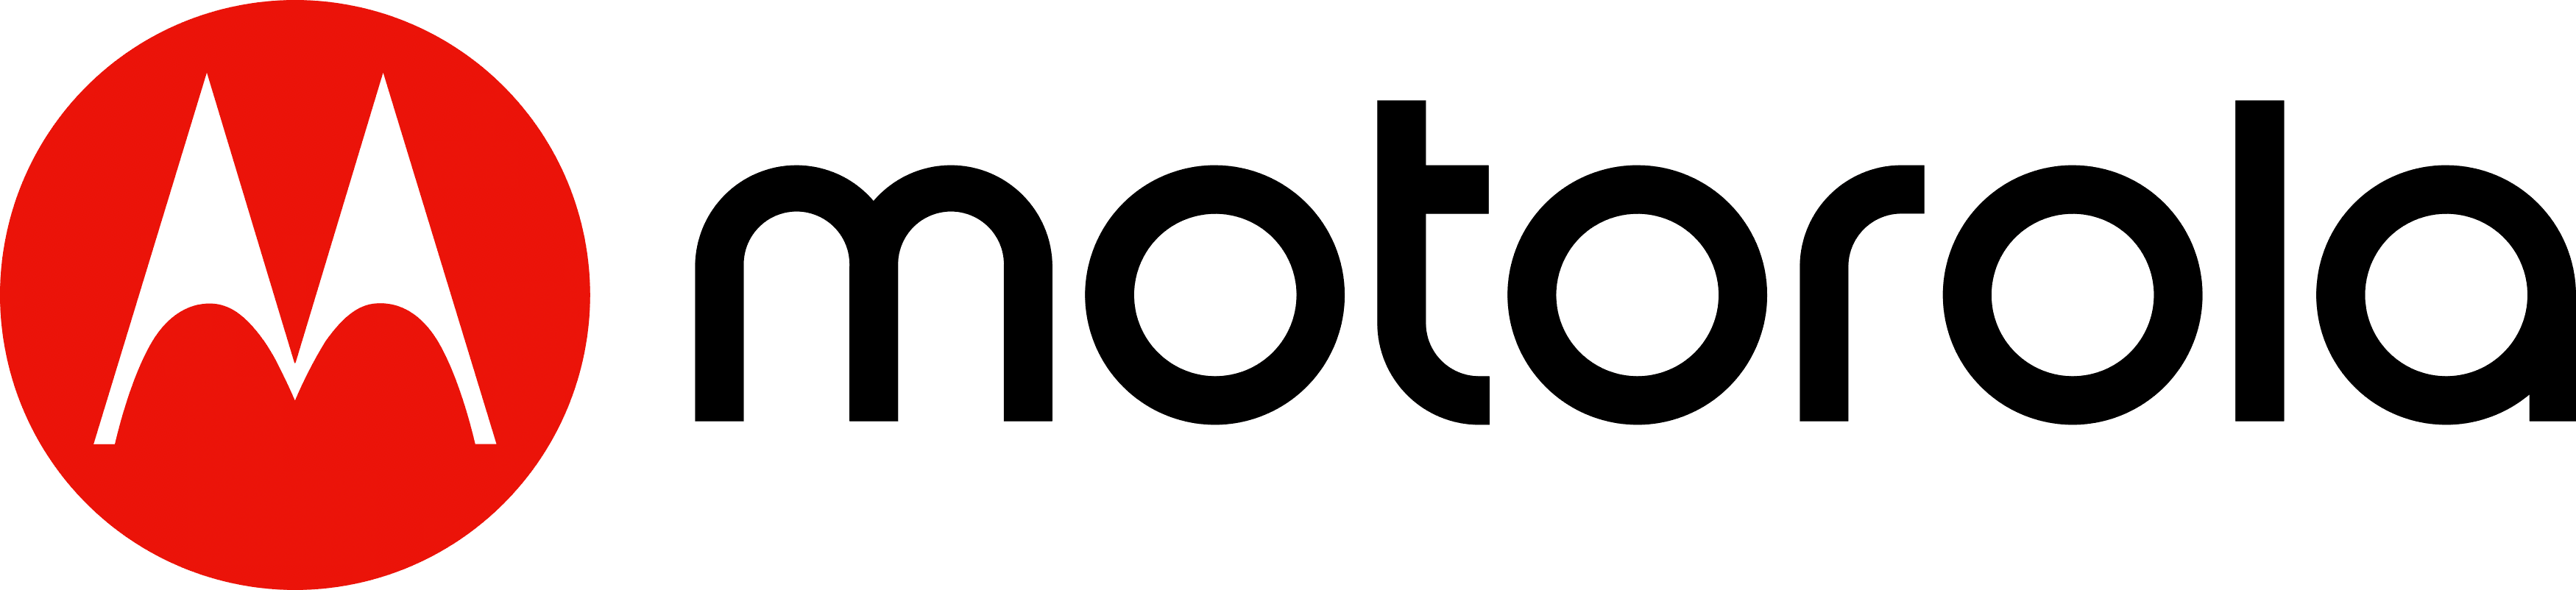 Celulares Motorola - Innovacell